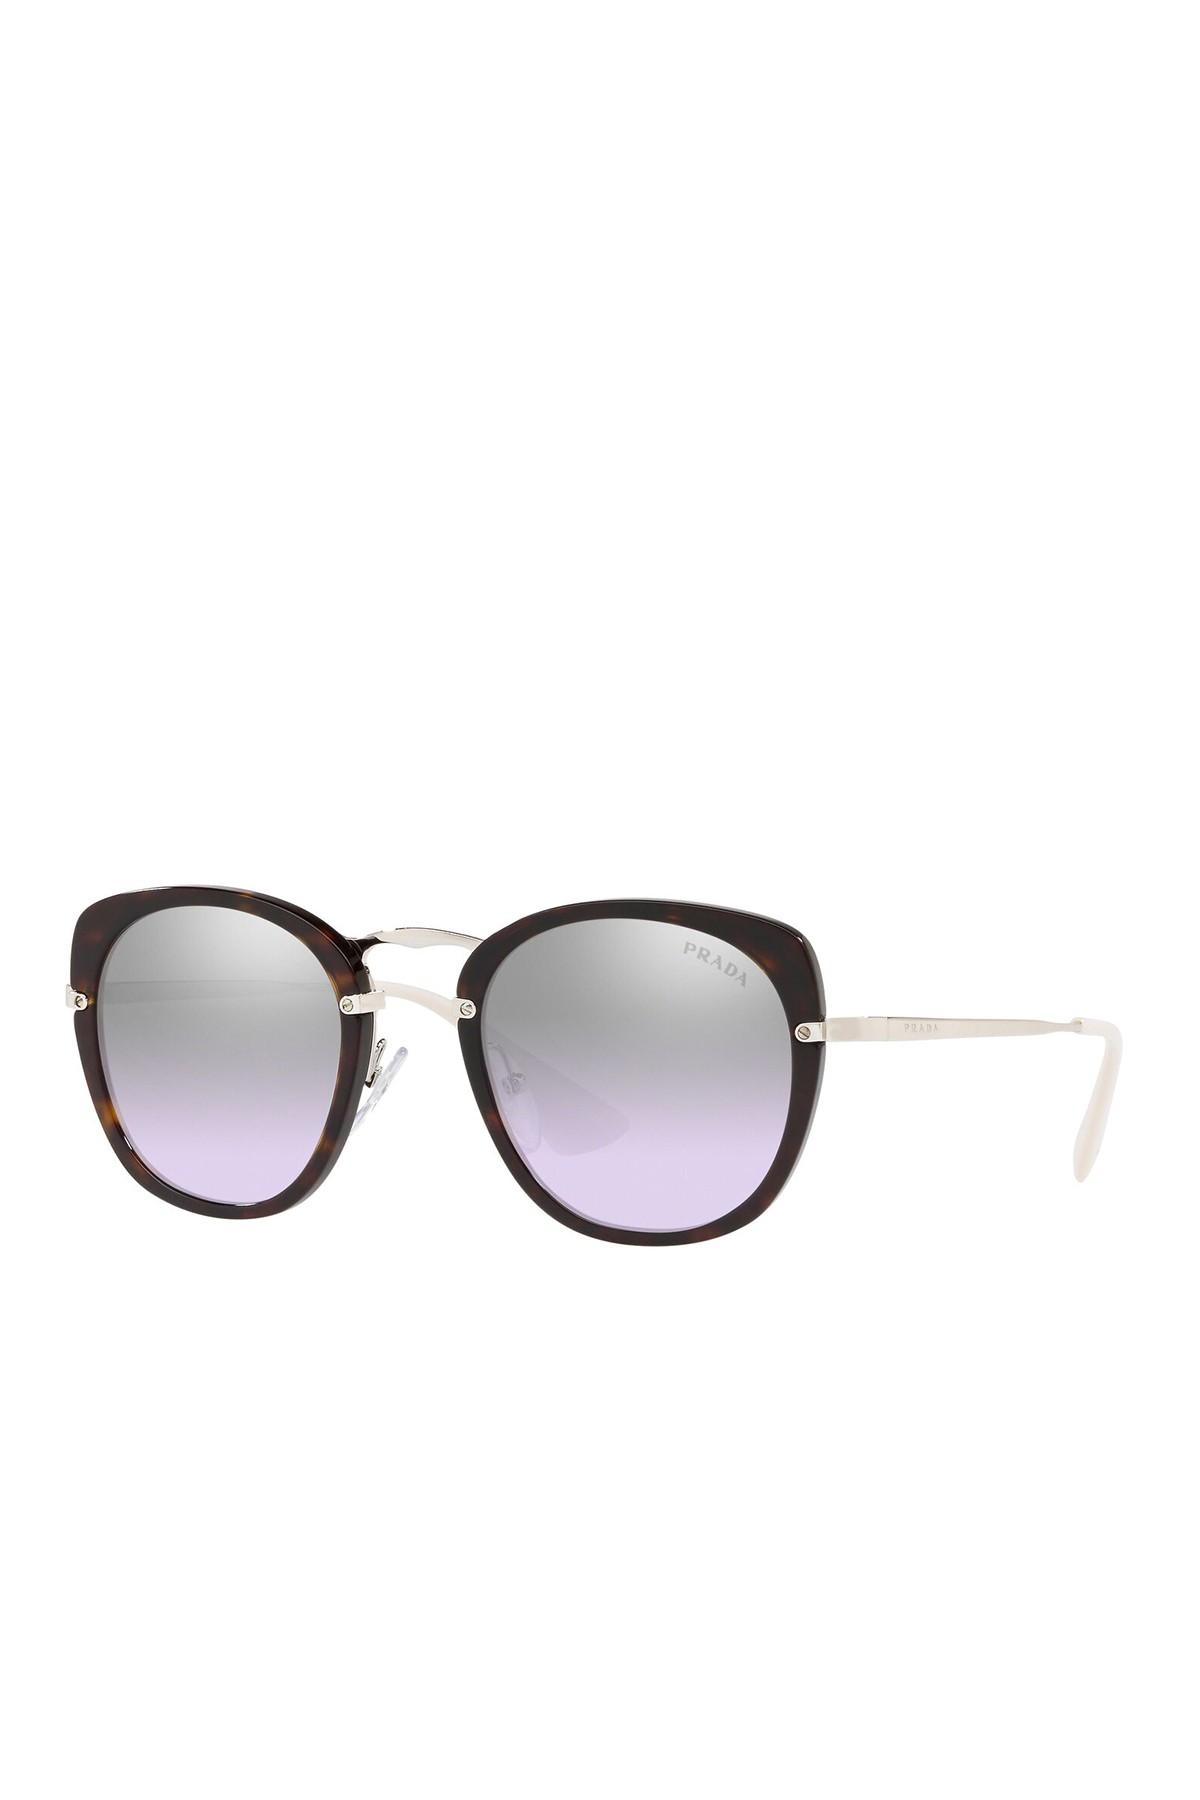 prada women's phantos 49mm sunglasses 